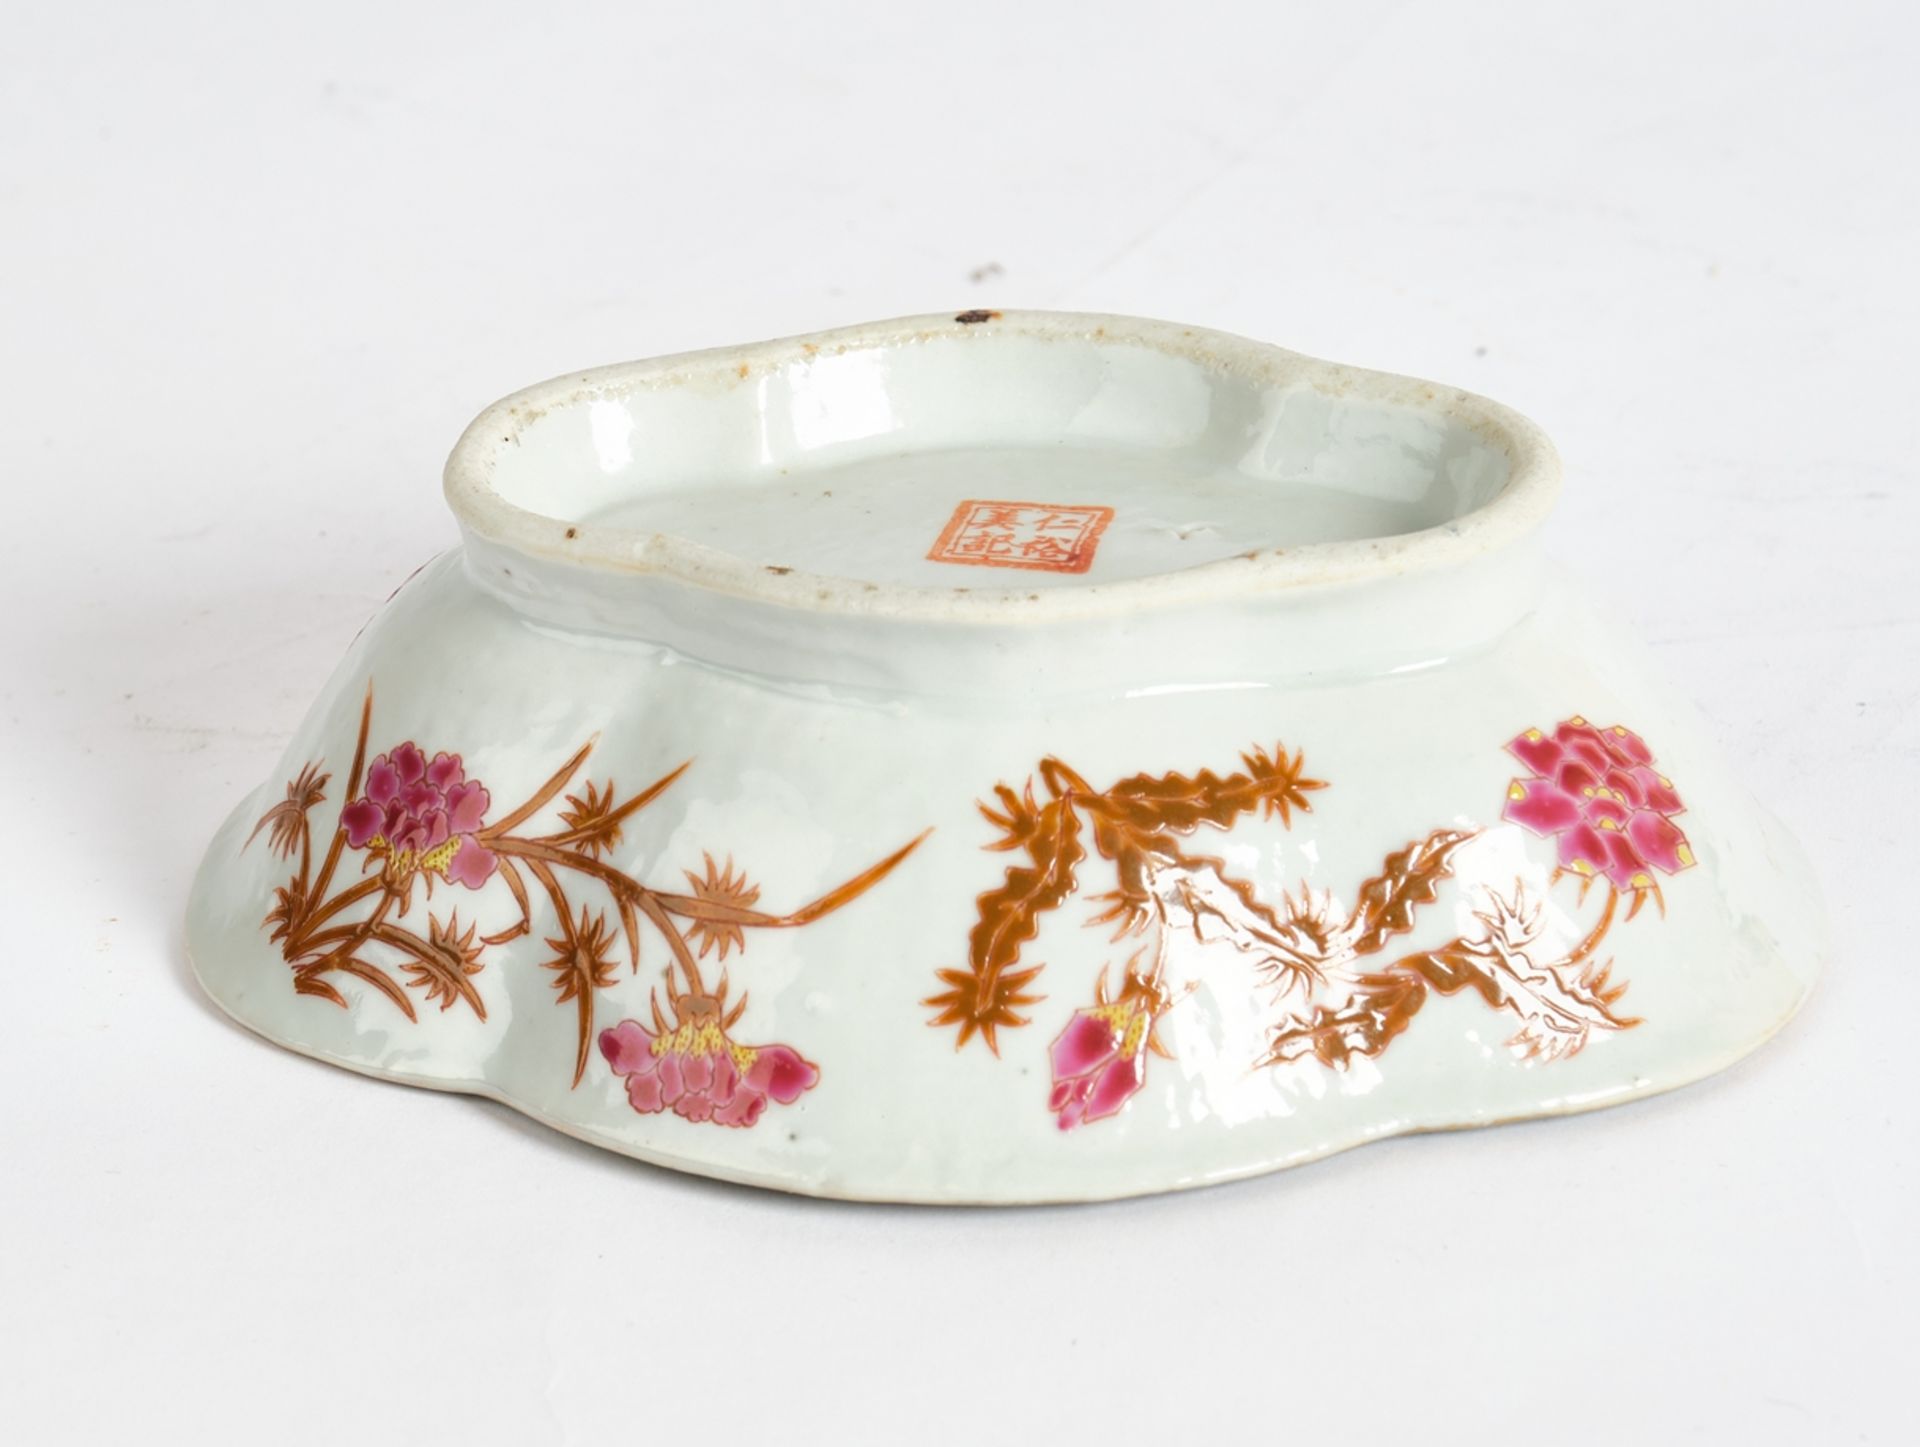 Schale, Porzellan, China, späte Qing-Zeit, farbiger Emaildekor mit Blütenzweigen, Boden mit gestemp - Bild 2 aus 2